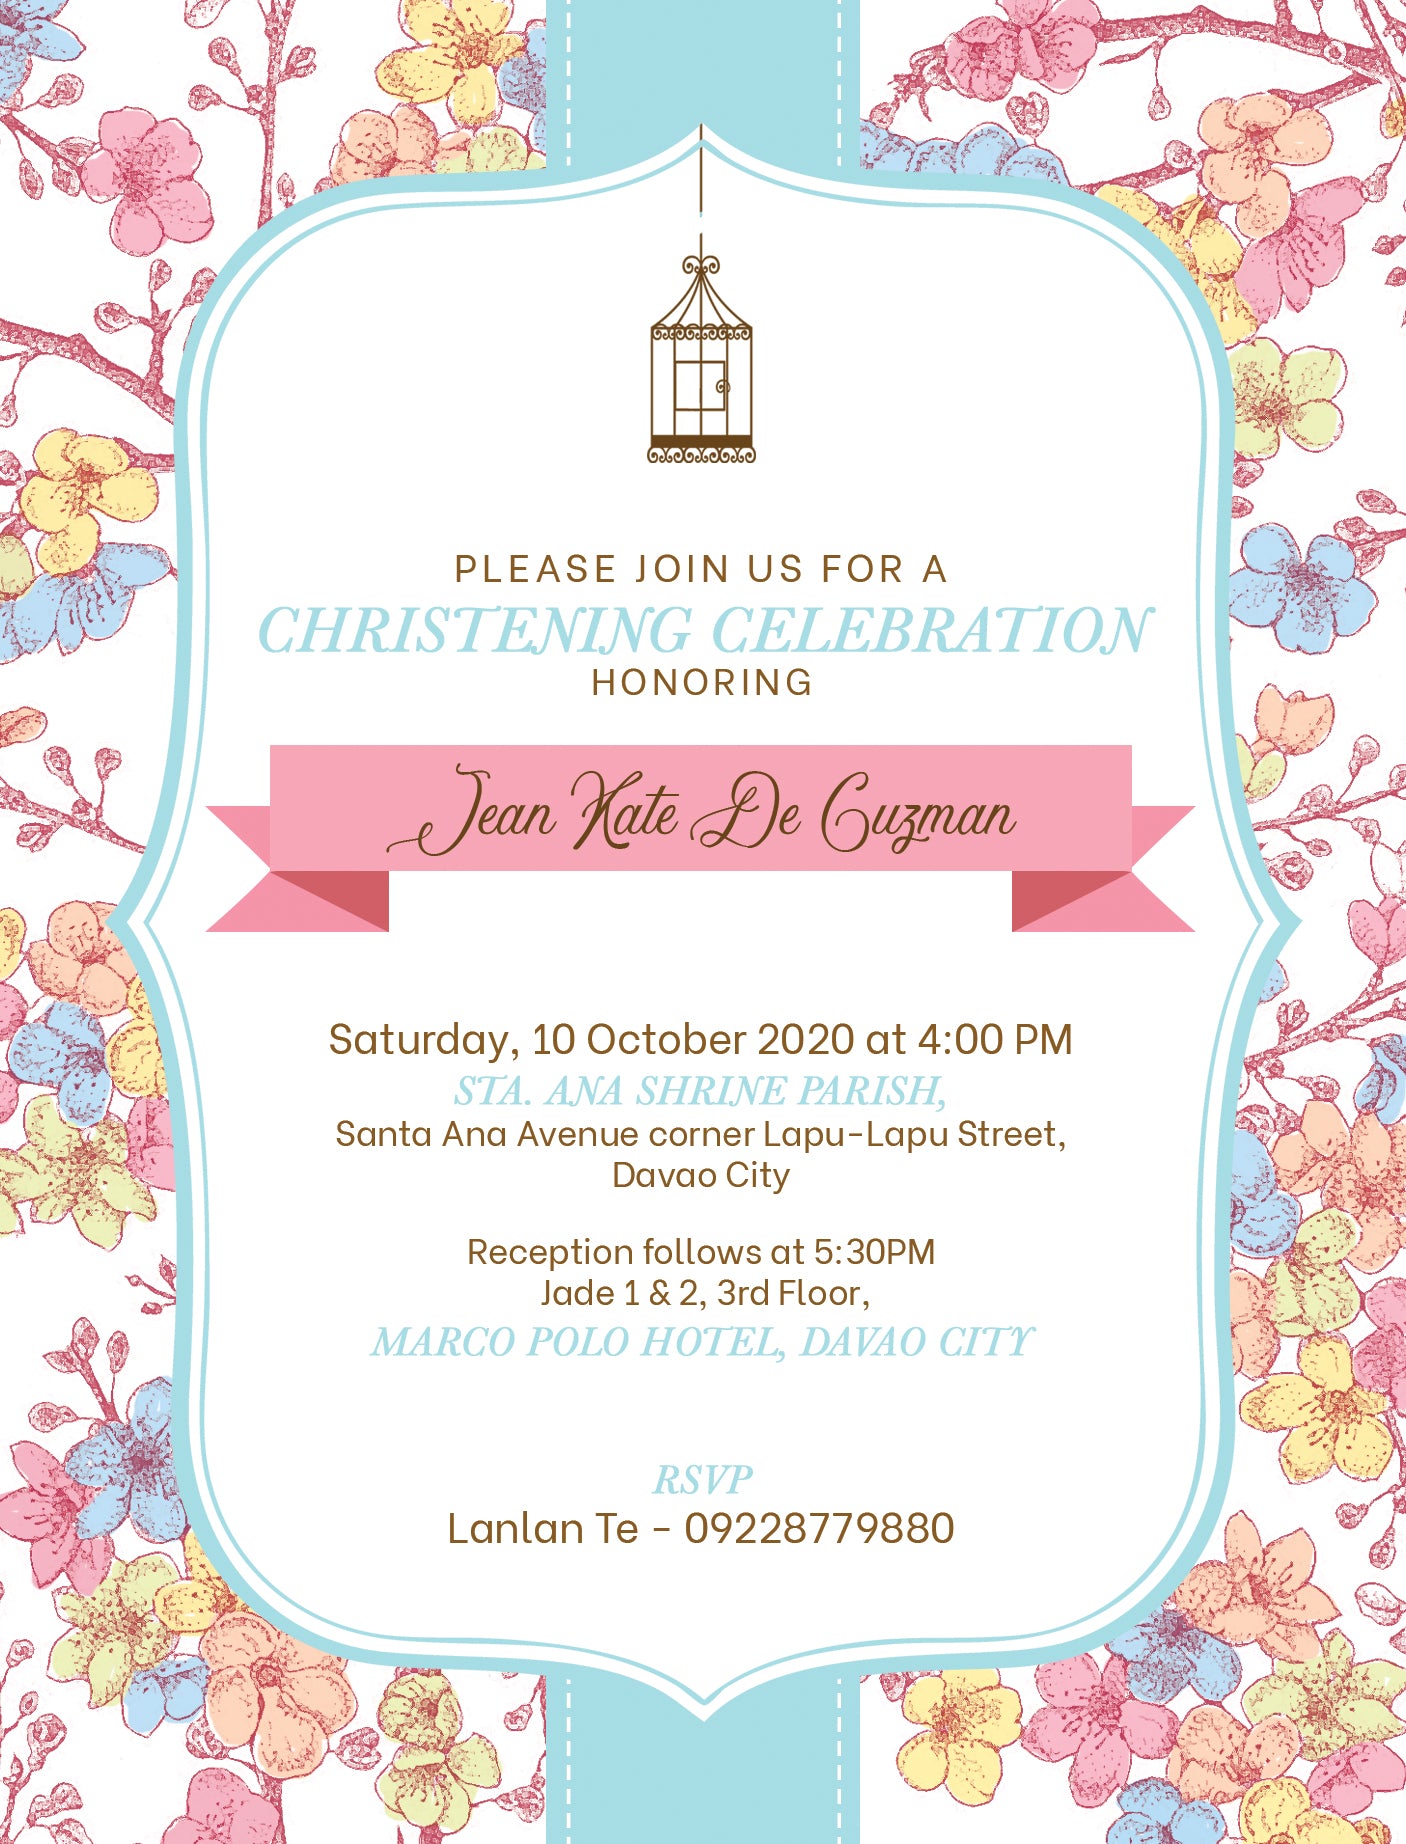 Jean Christening Invitation